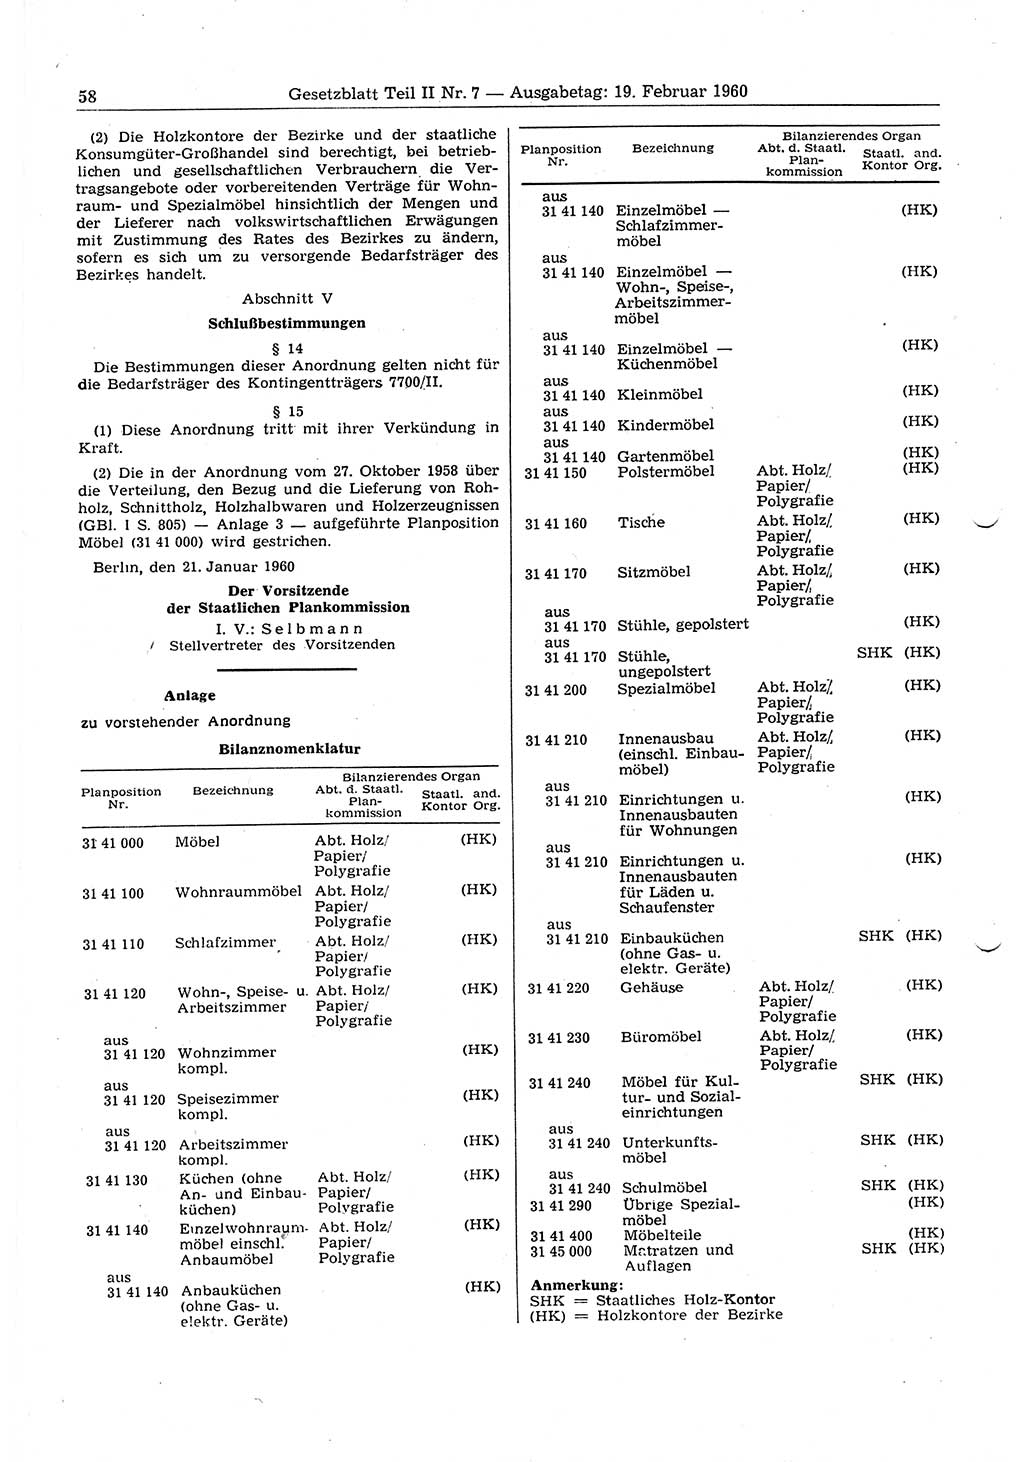 Gesetzblatt (GBl.) der Deutschen Demokratischen Republik (DDR) Teil ⅠⅠ 1960, Seite 58 (GBl. DDR ⅠⅠ 1960, S. 58)